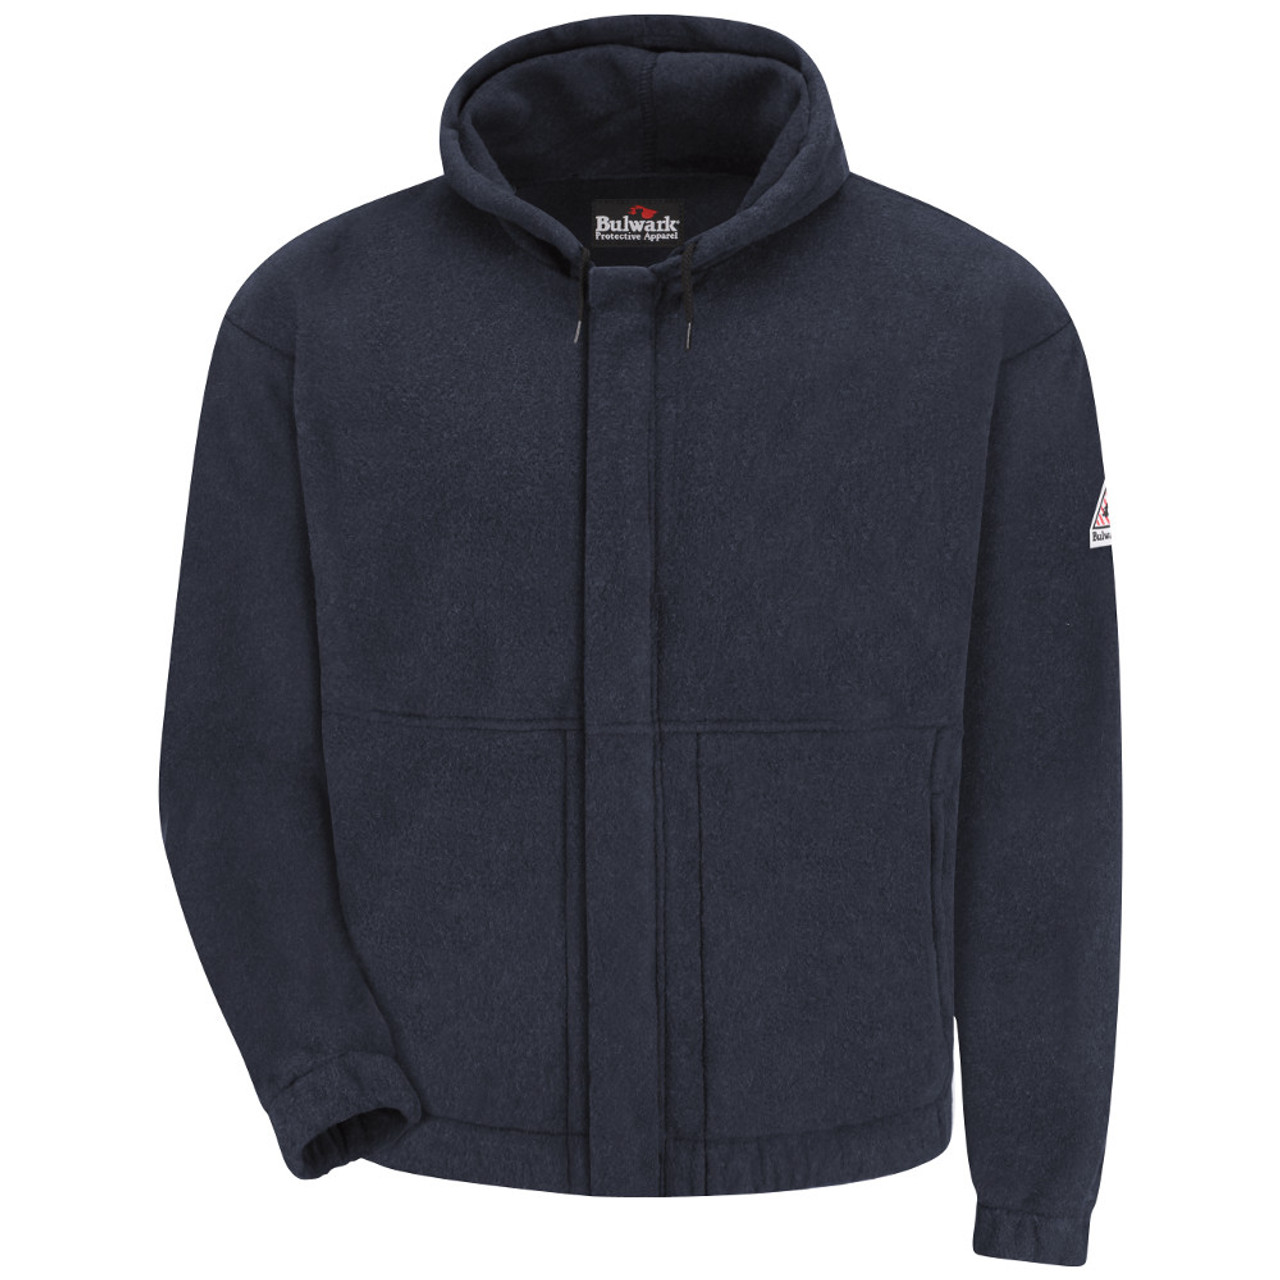 Zip-Front Hooded Fleece Sweatshirt - Cotton/Spandex Blend - CAT 2